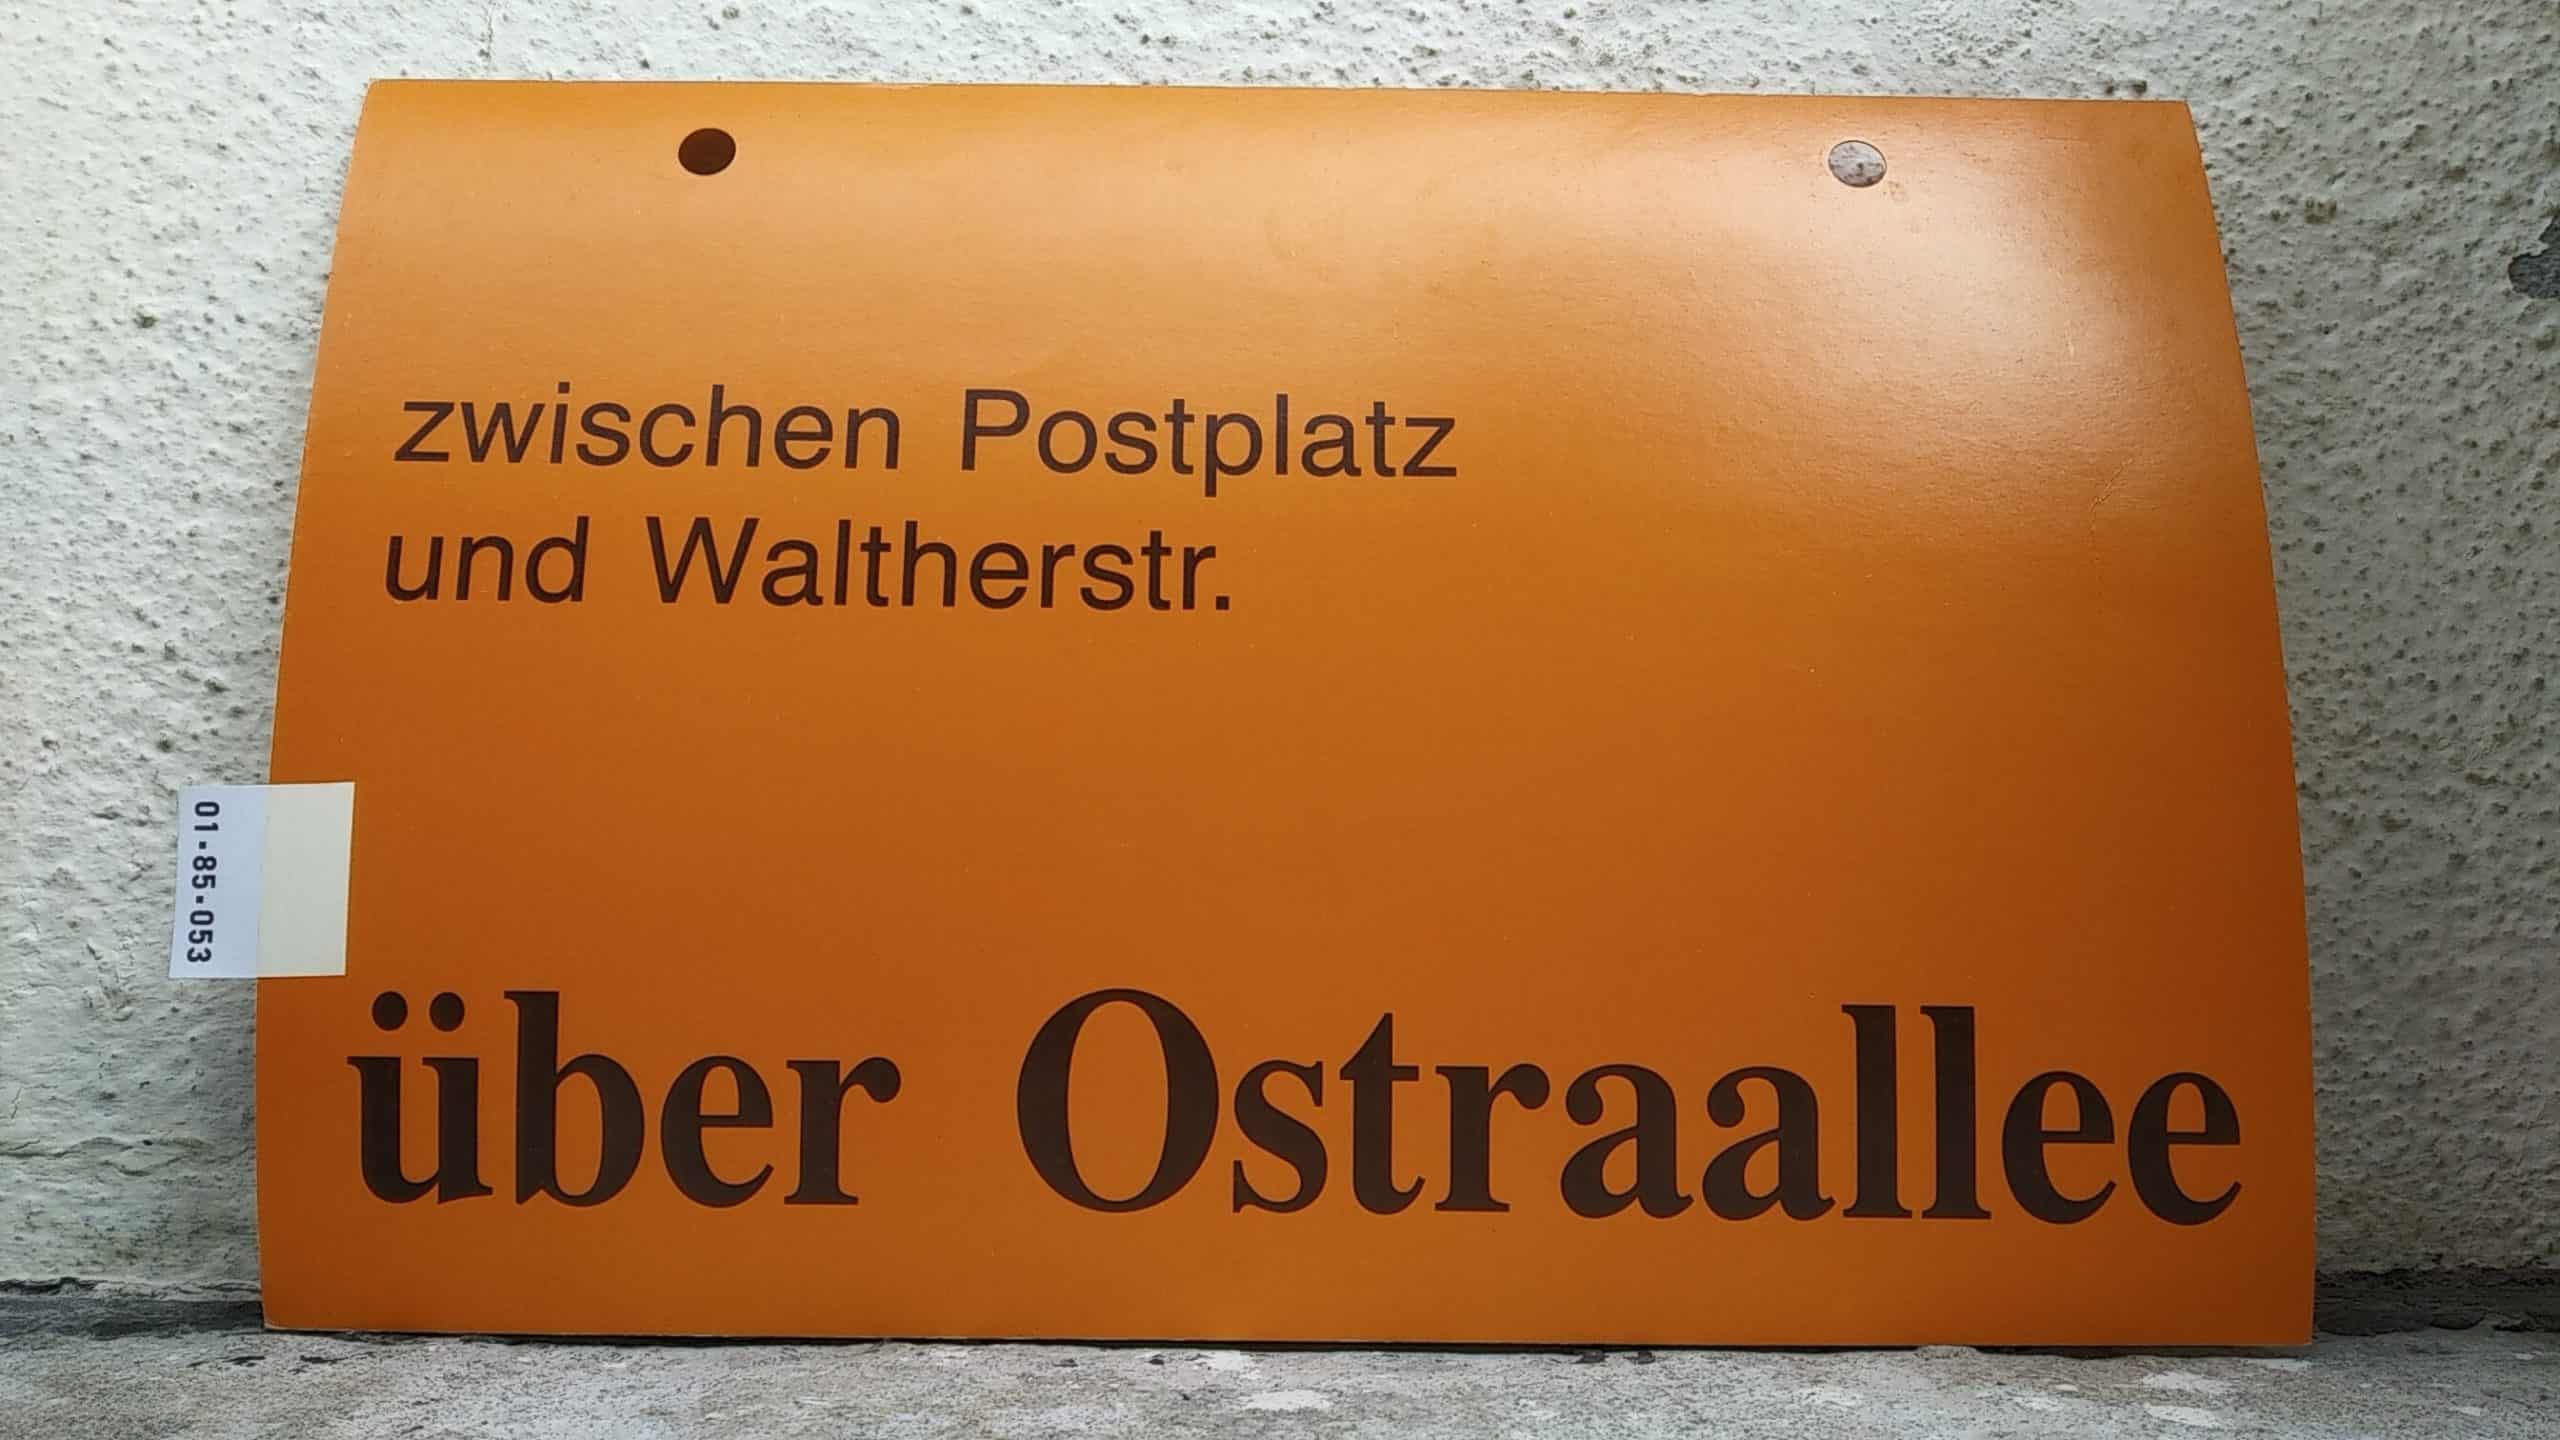 Ein seltenes Straßenbahn-Umleitungsschild aus Dresden: zwischen Postplatz und Waltherstr. über Ostraallee